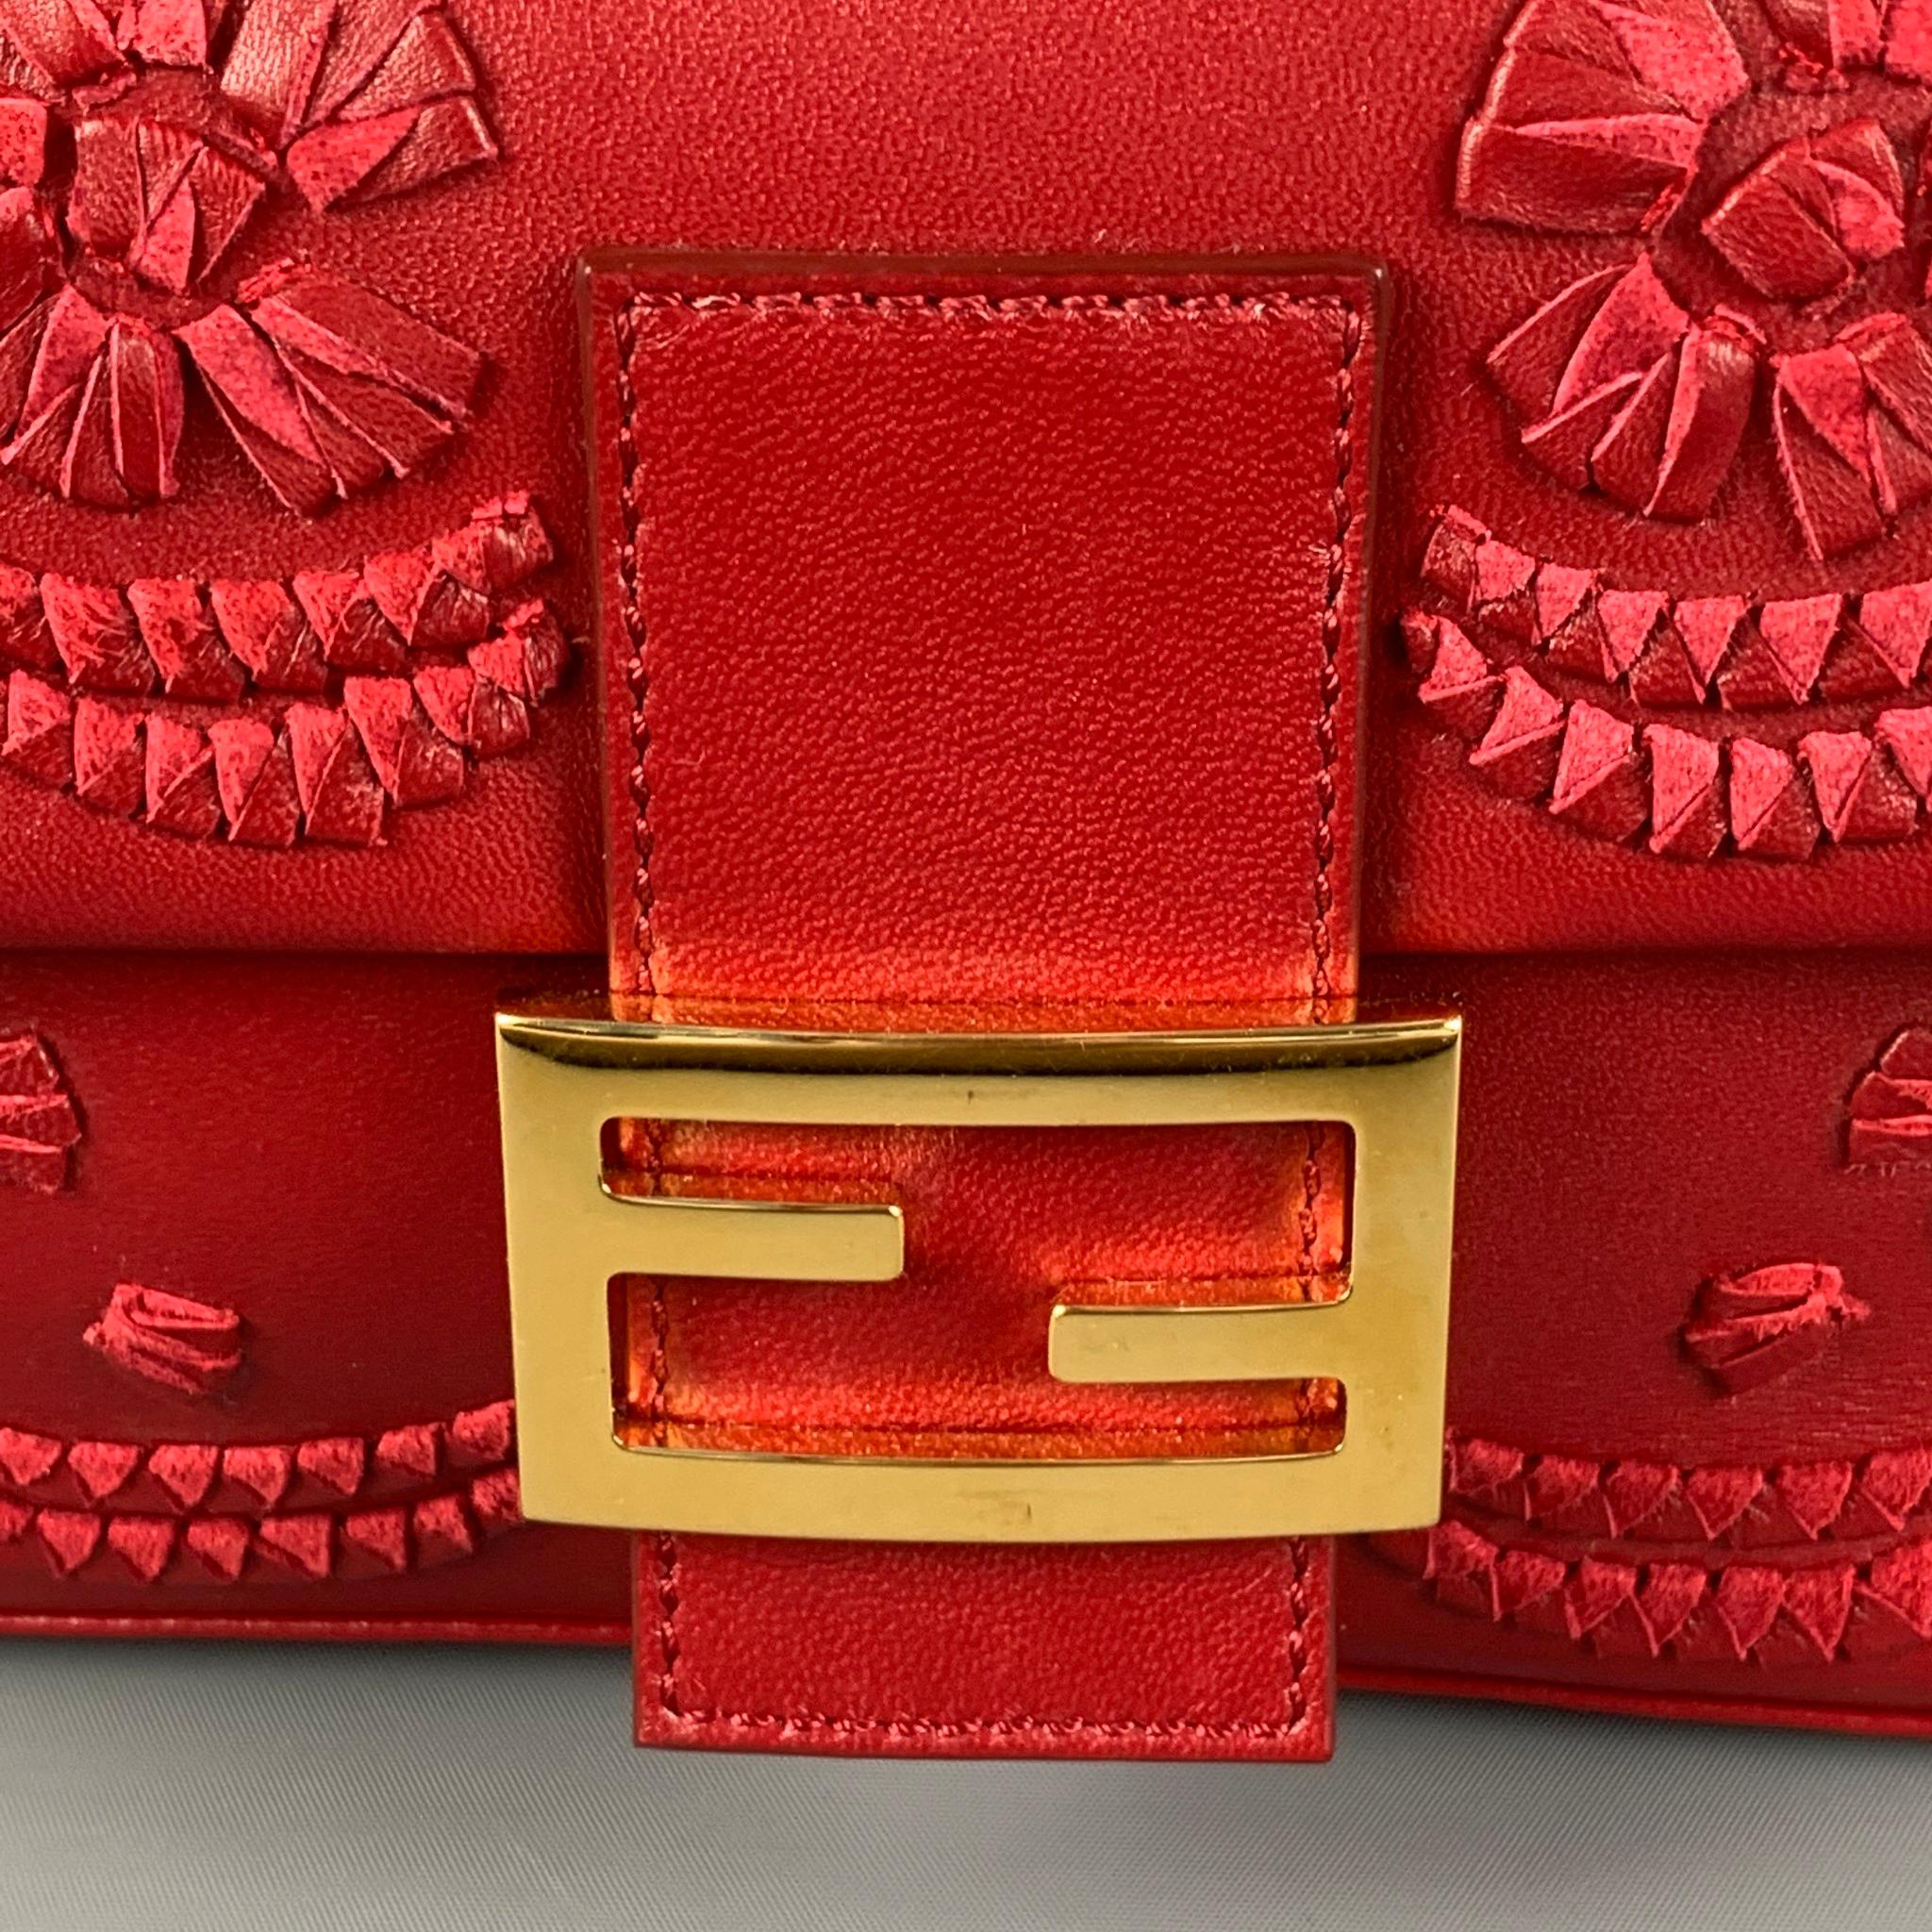 FENDI Red Floral Leather Baguette Shoulder Handbag 7